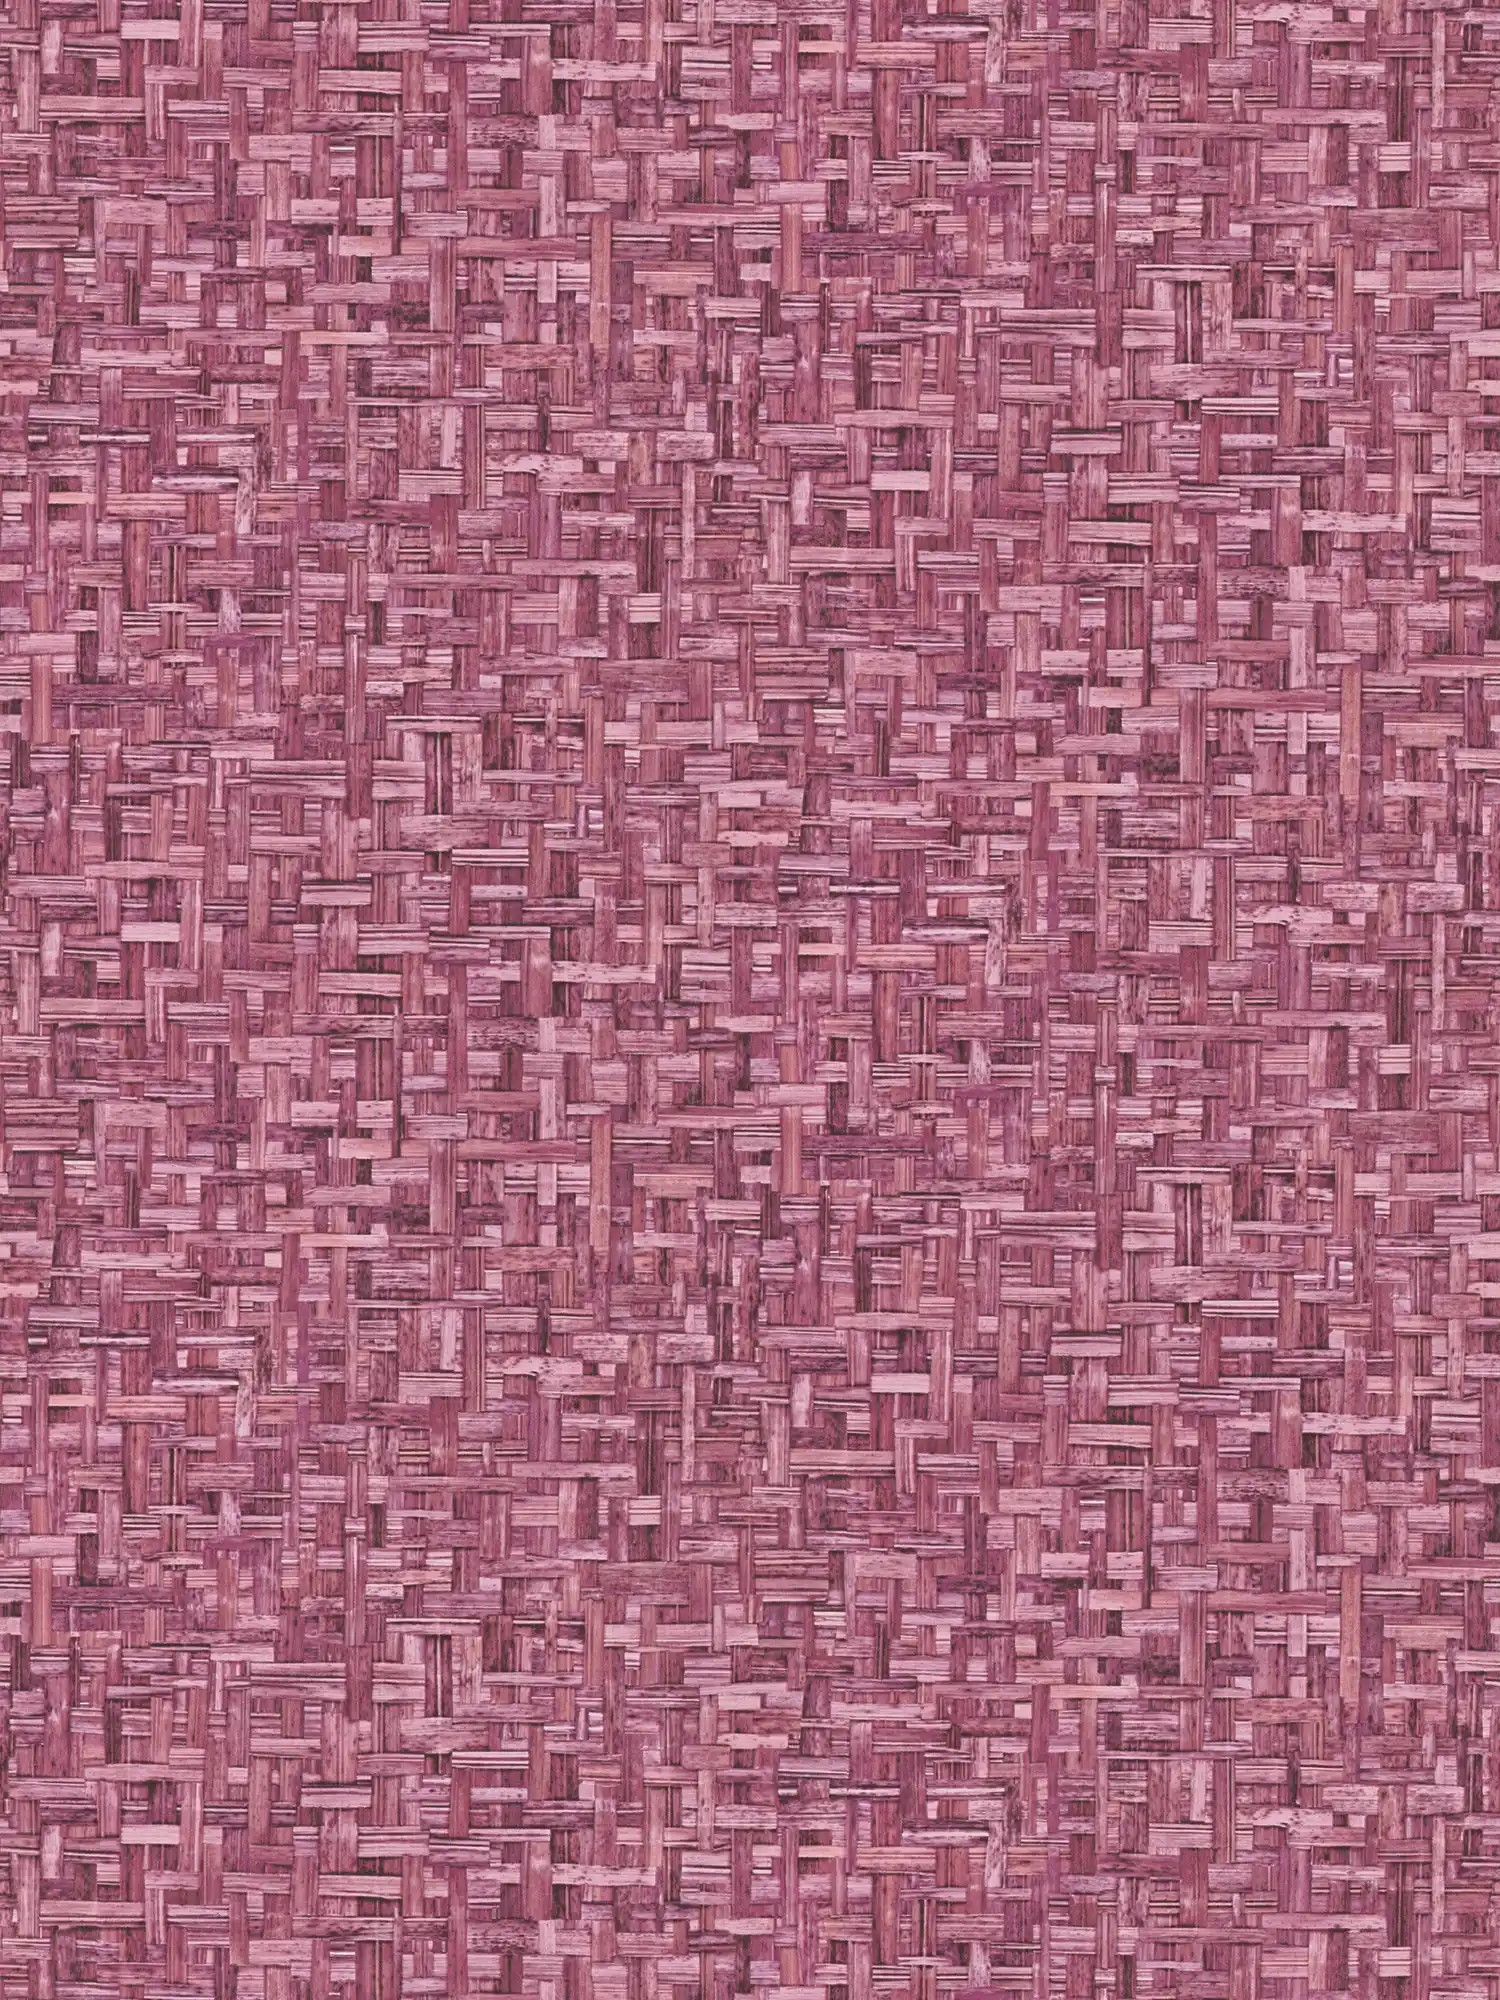 Vliesbehang paars met gevlochten patroon & structuur design - roze, rood
